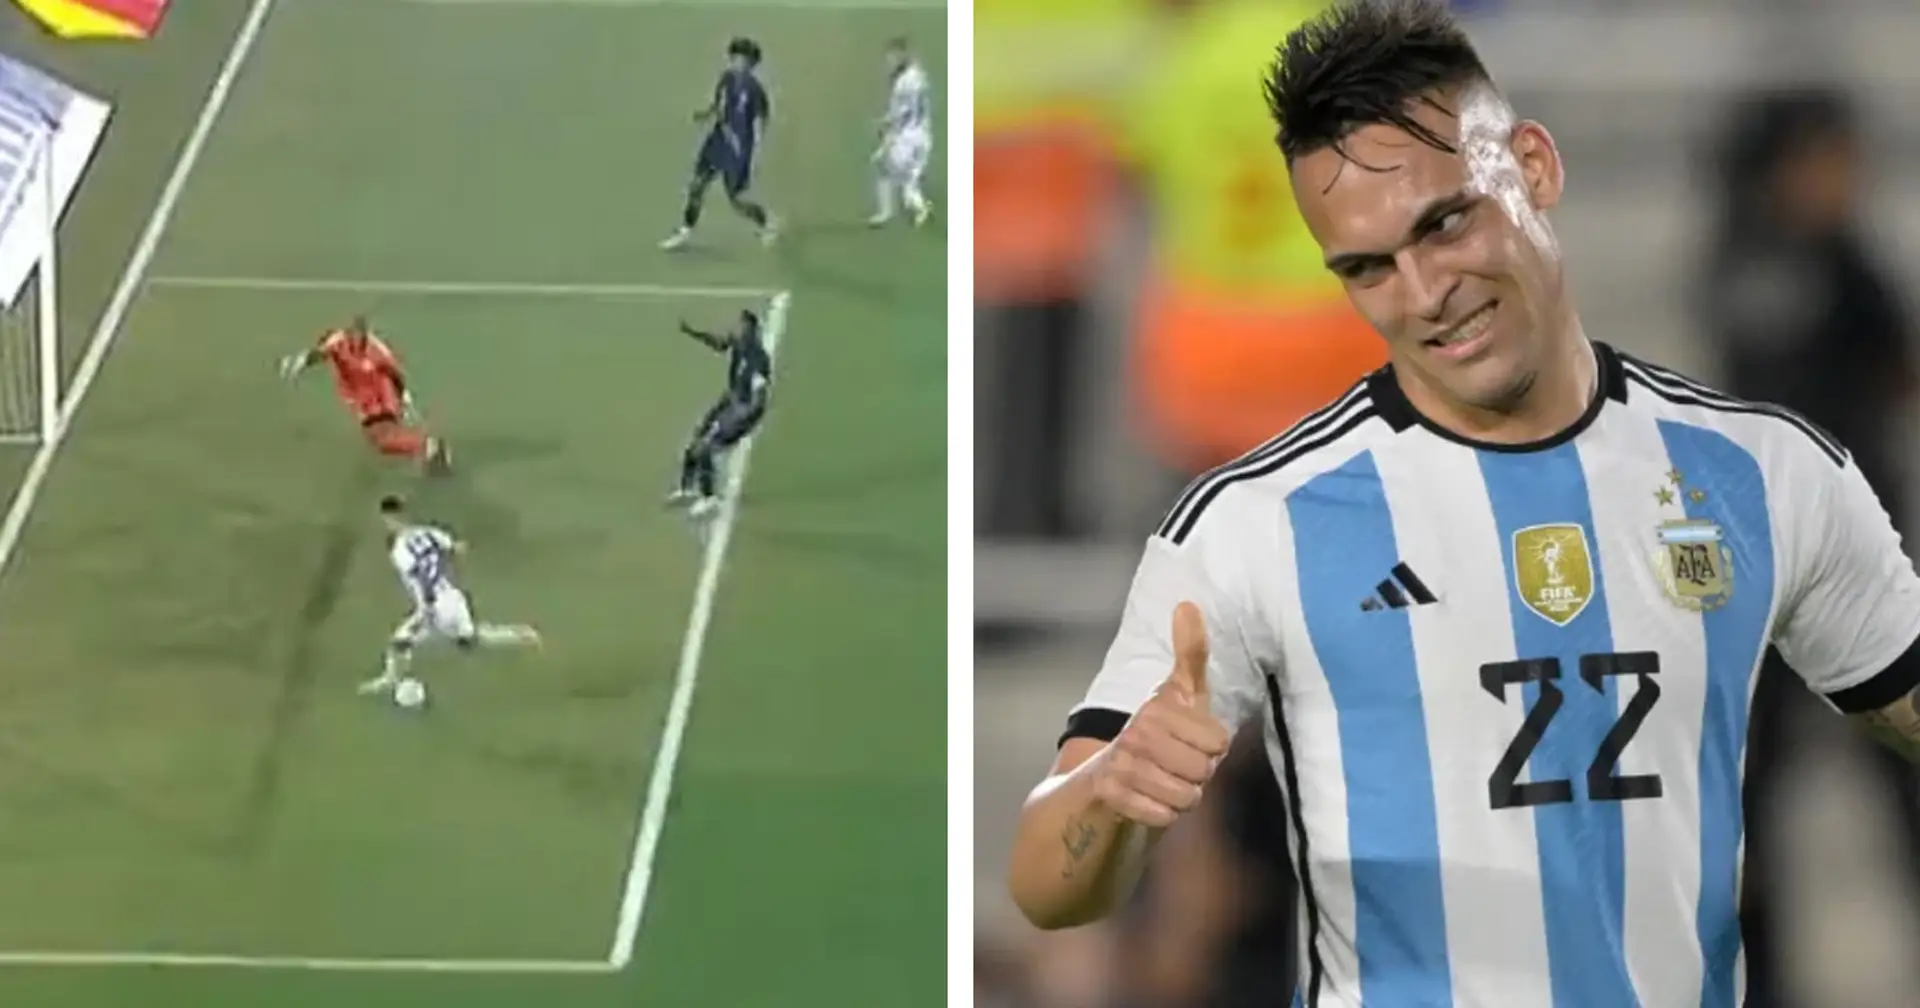 Lukaku vola, Lautaro s'inceppa: le immagini del gol divorato dal 'Toro' con l'Argentina sono virali